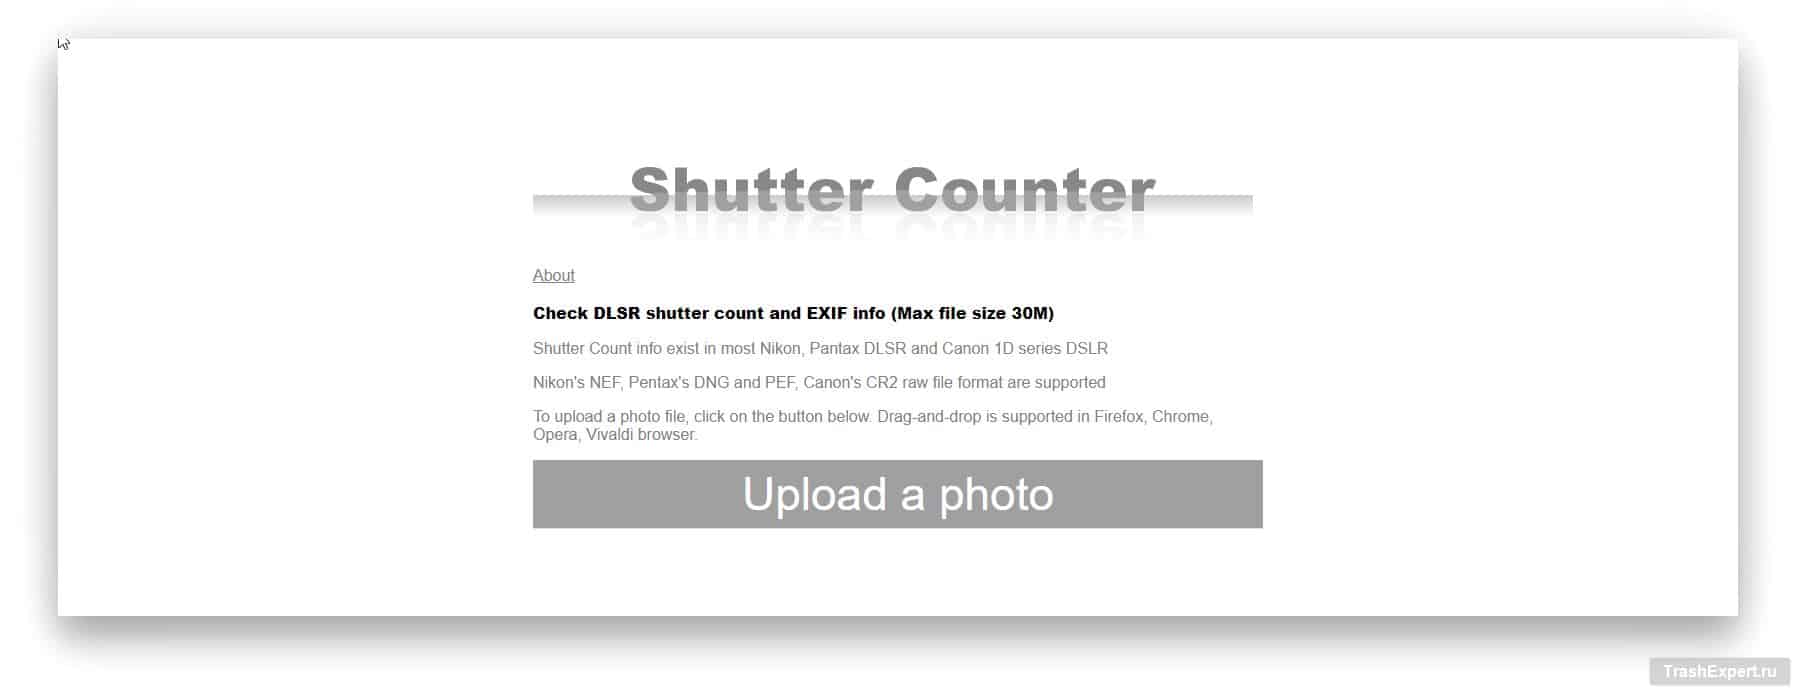 shuttercounter